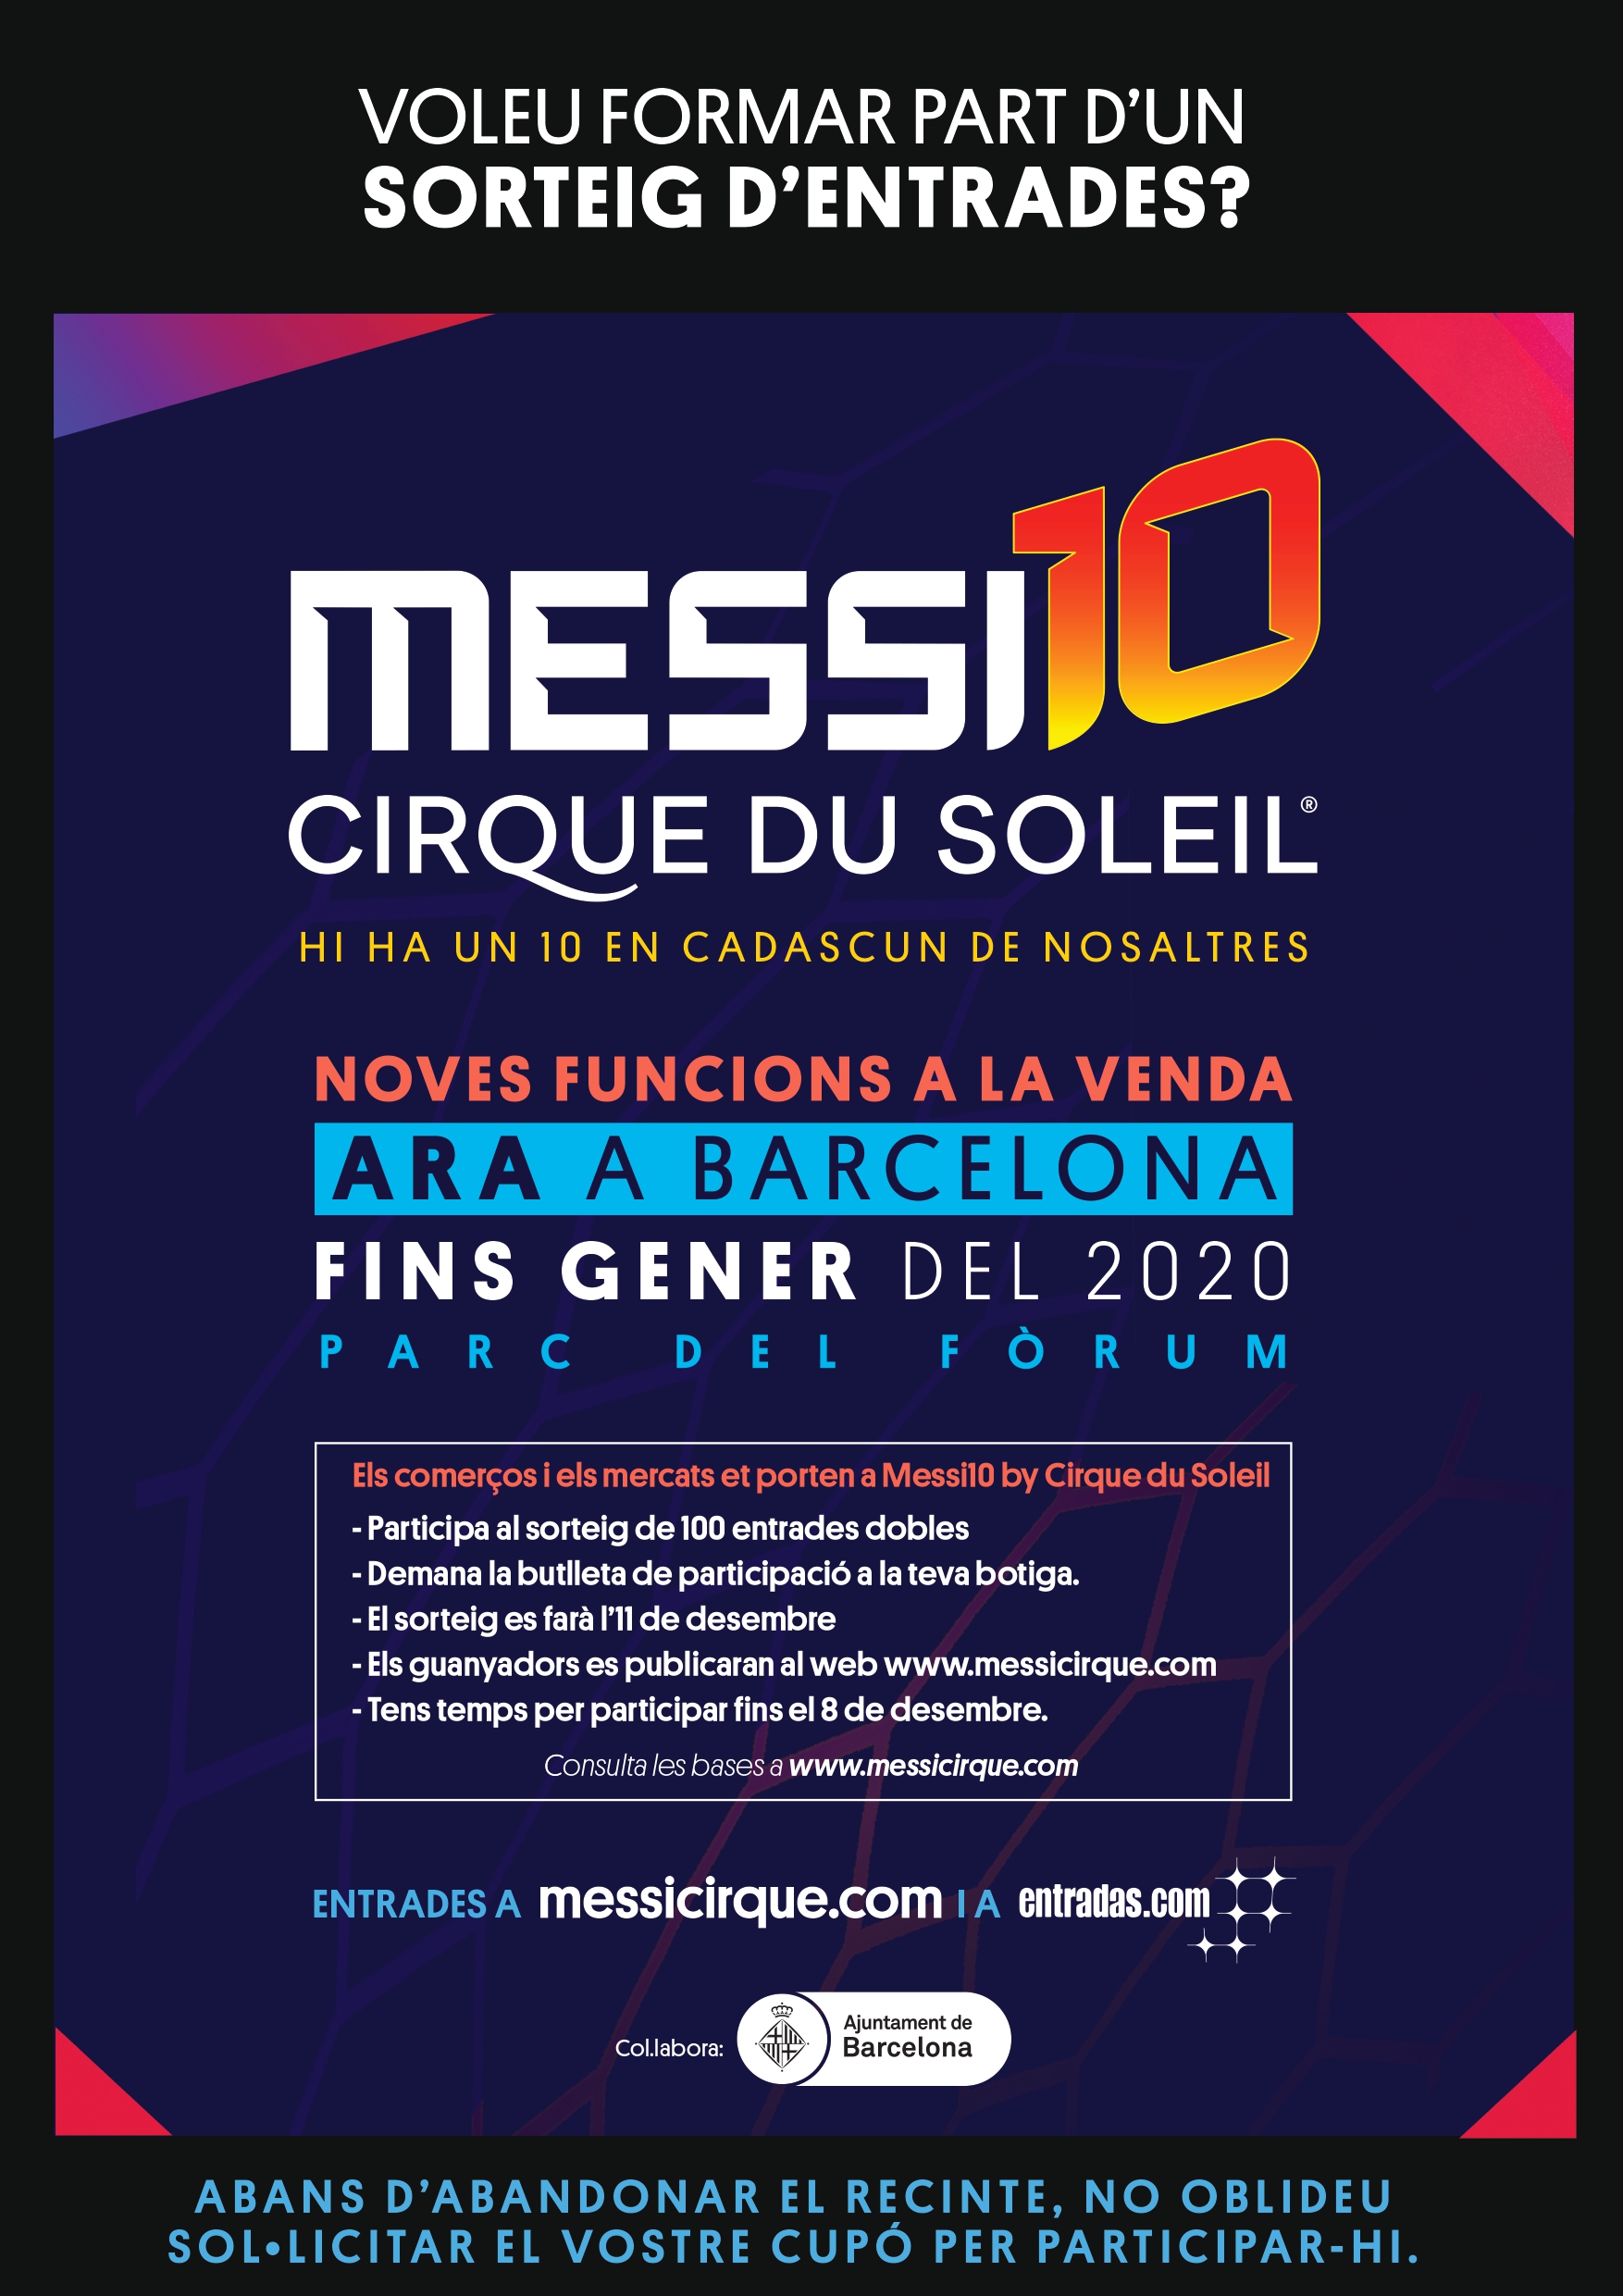 ¡Gana una entrada doble para ver Messi10 al Cirque du Soleil!